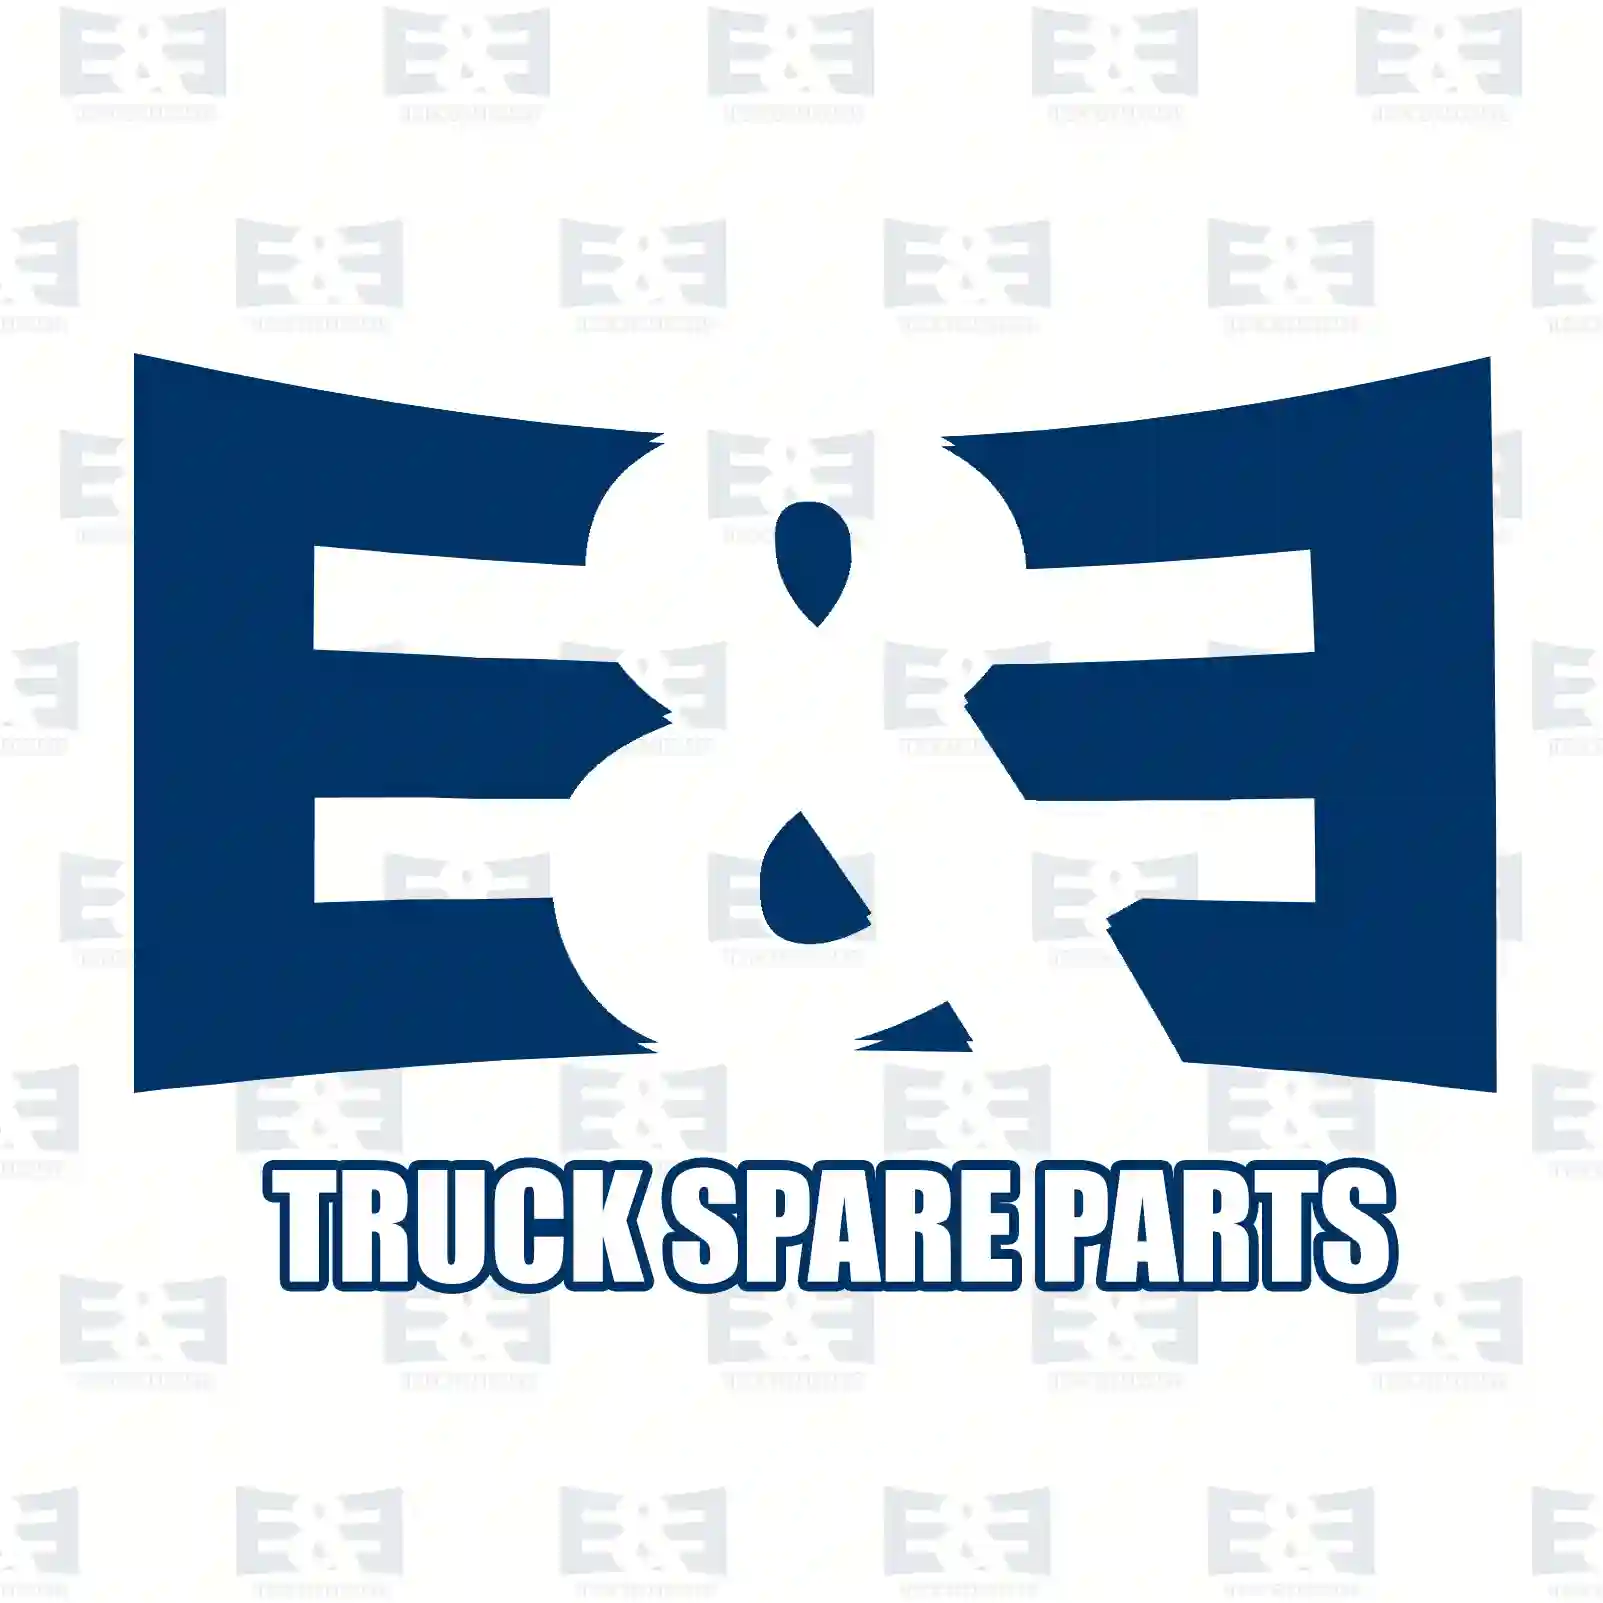 Level valve, 2E2281694, 41211334 ||  2E2281694 E&E Truck Spare Parts | Truck Spare Parts, Auotomotive Spare Parts Level valve, 2E2281694, 41211334 ||  2E2281694 E&E Truck Spare Parts | Truck Spare Parts, Auotomotive Spare Parts